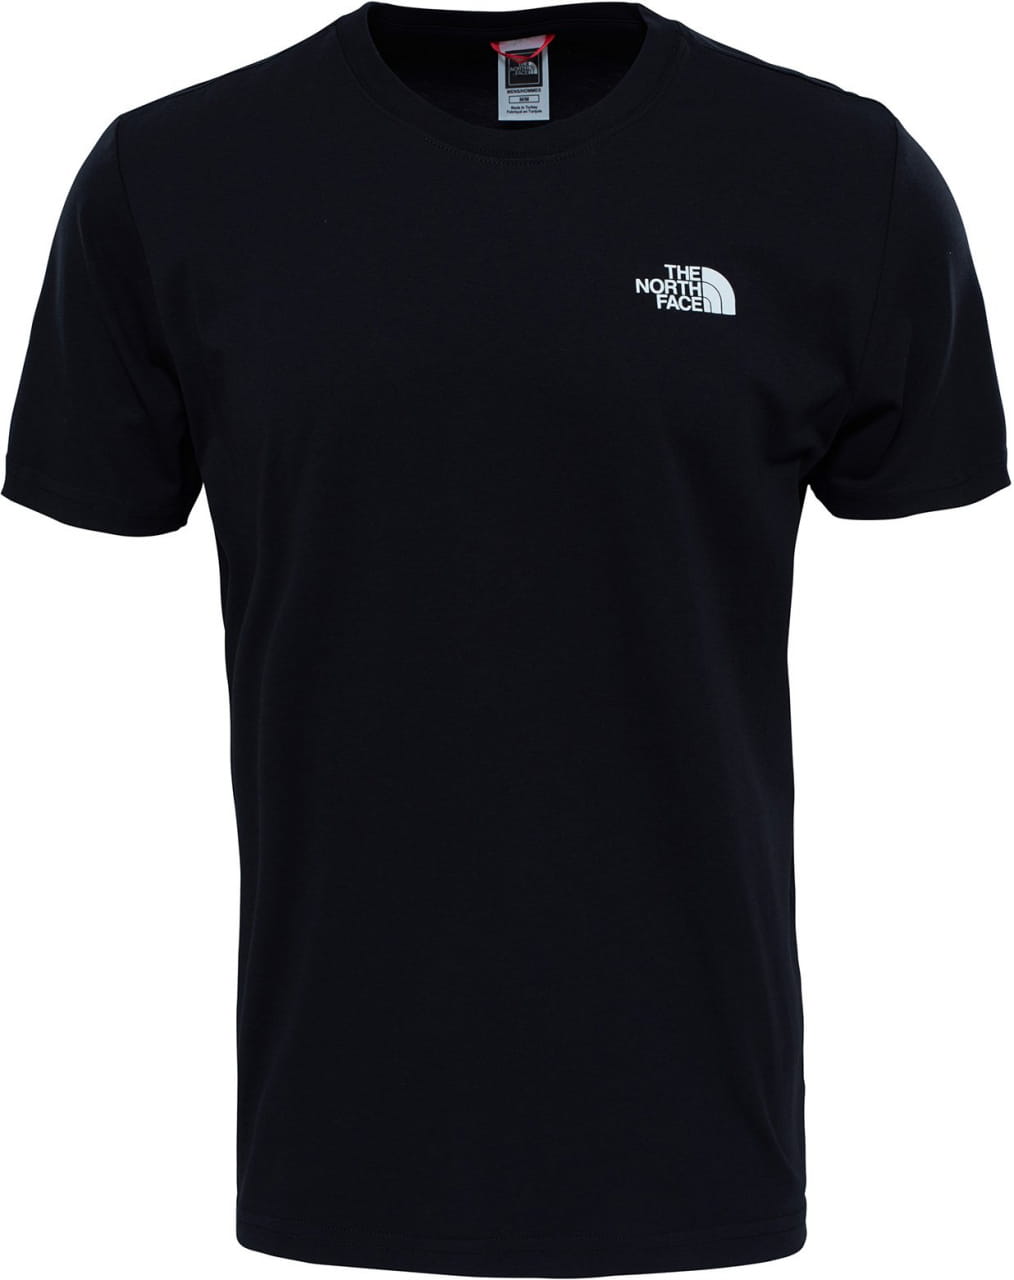 Koszulka męska The North Face Men's Redbox Celebration T-Shirt